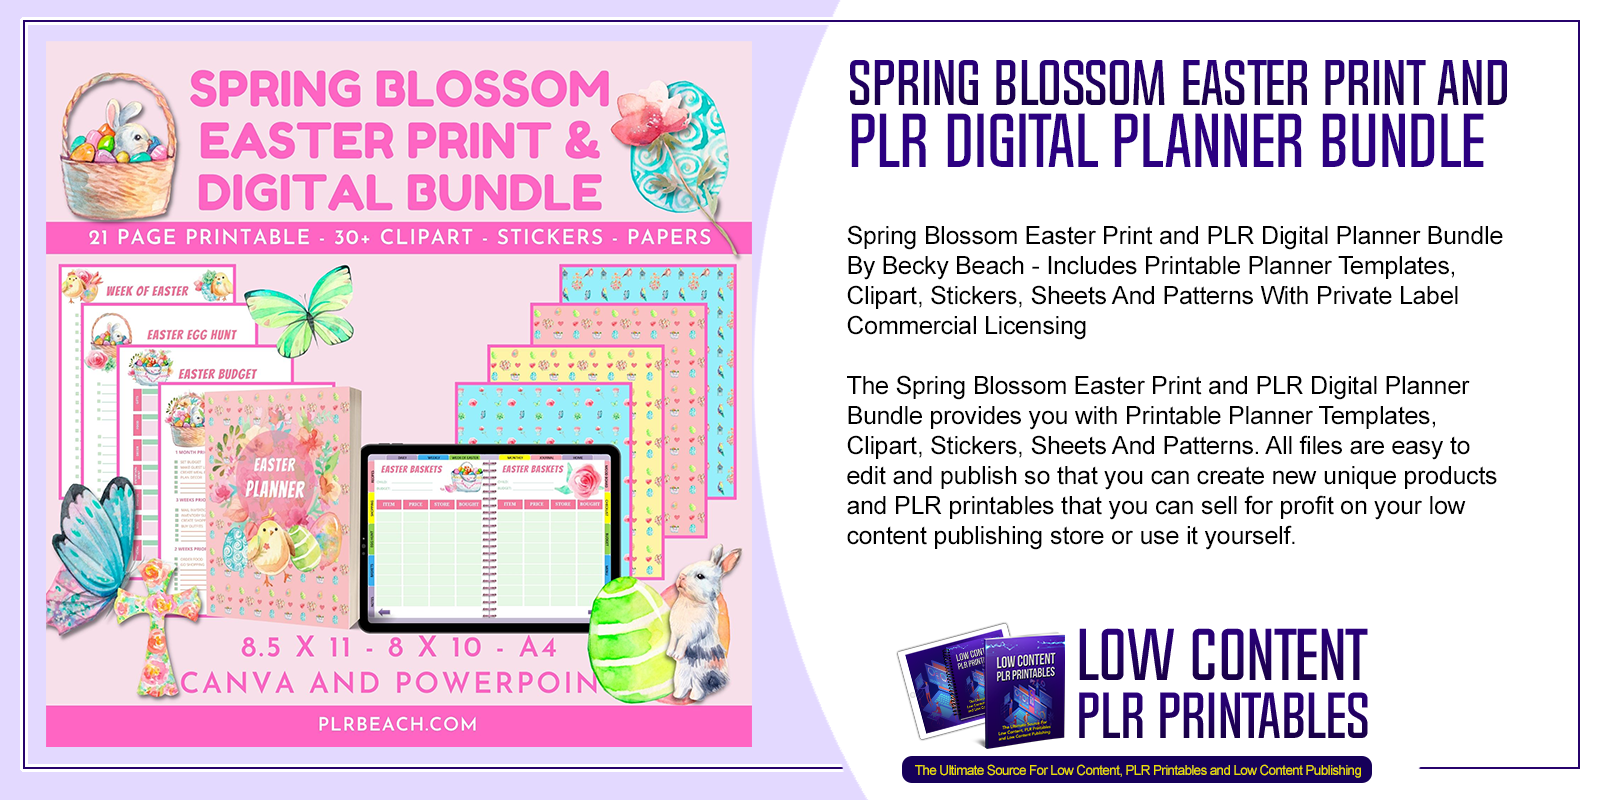 Spring Blossom Easter Print and PLR Digital Planner Bundle 1